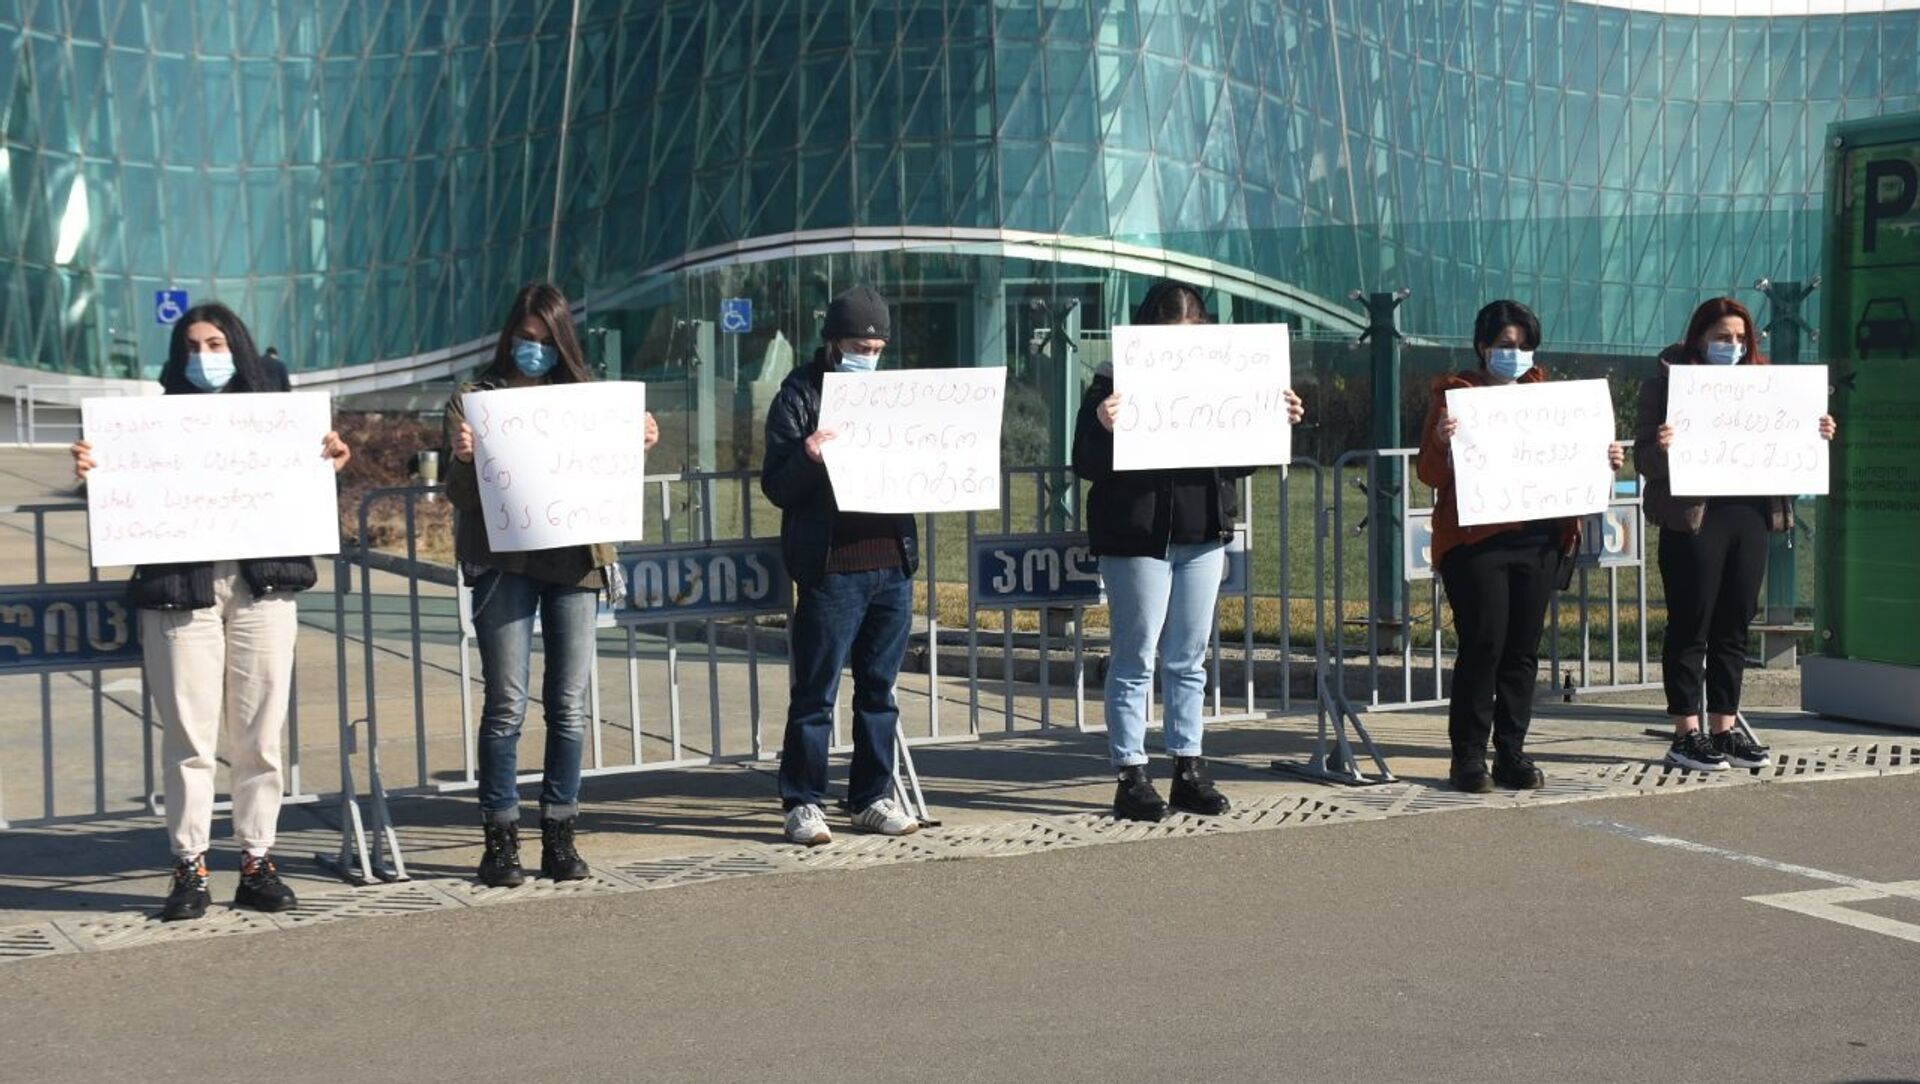 Представители движения Солидарность провели акцию протеста у МВД Грузии 10 февраля 2021 года - Sputnik Грузия, 1920, 10.02.2021